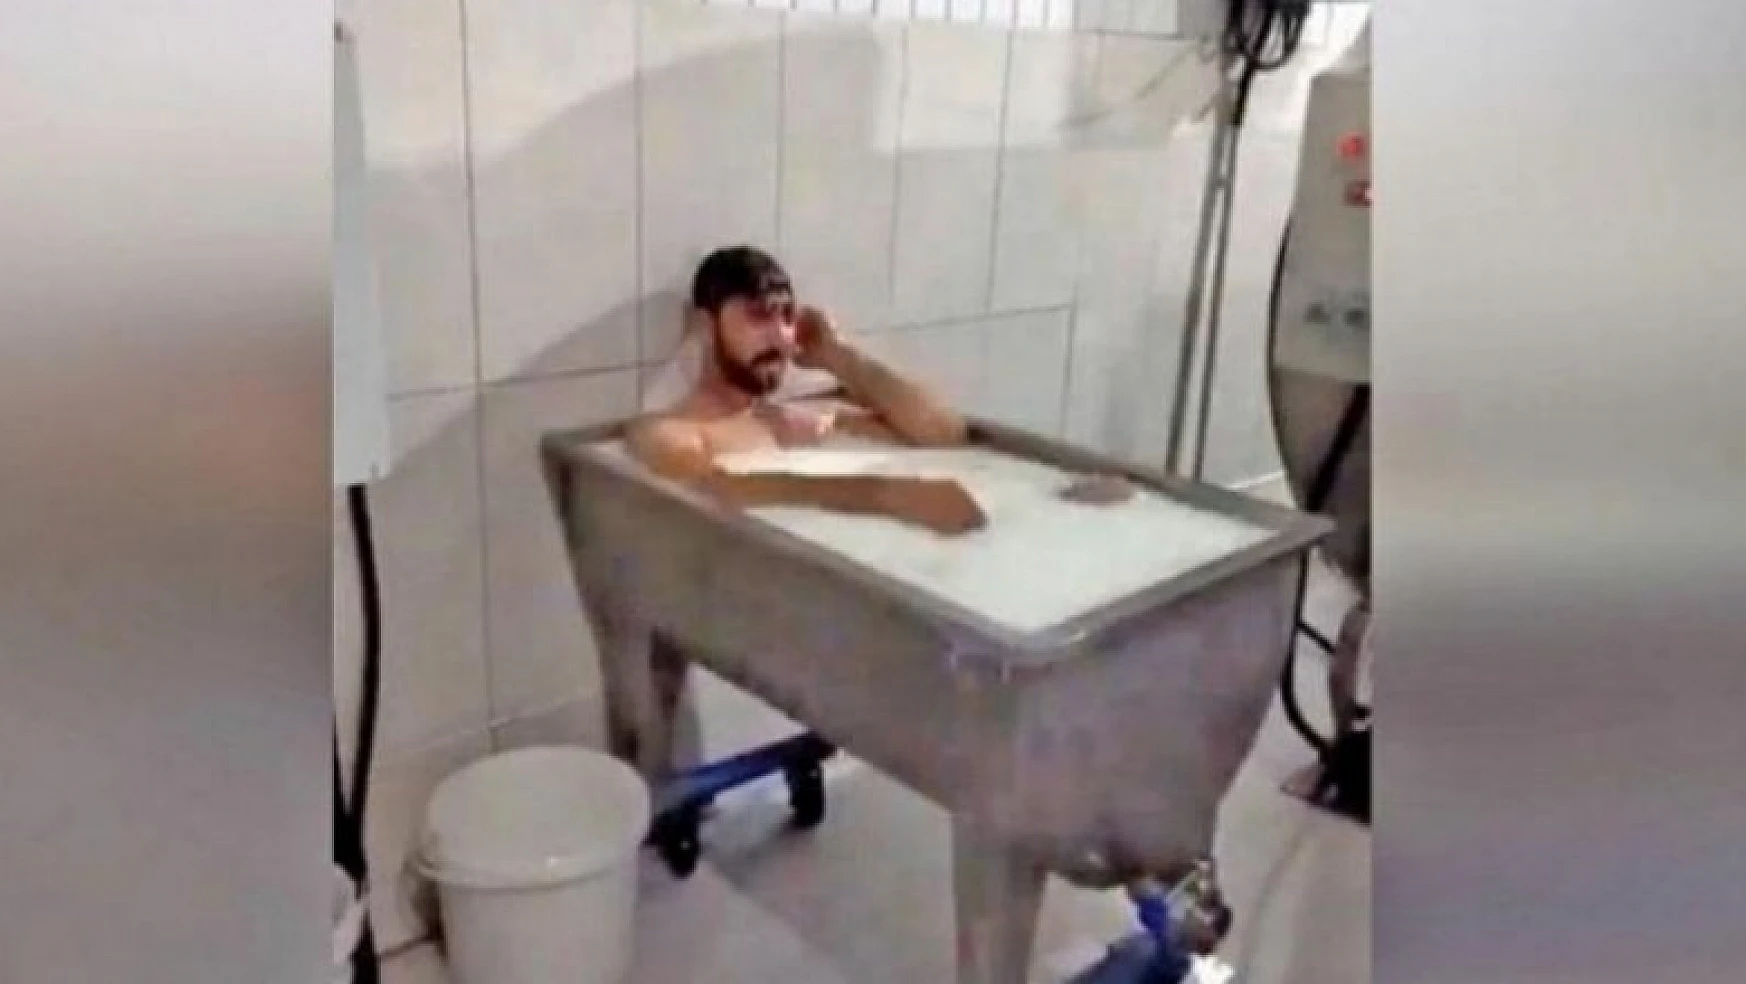 Konya'da süt banyosu yapan işçi Uğur Sayar'ın yeni işi belli oldu